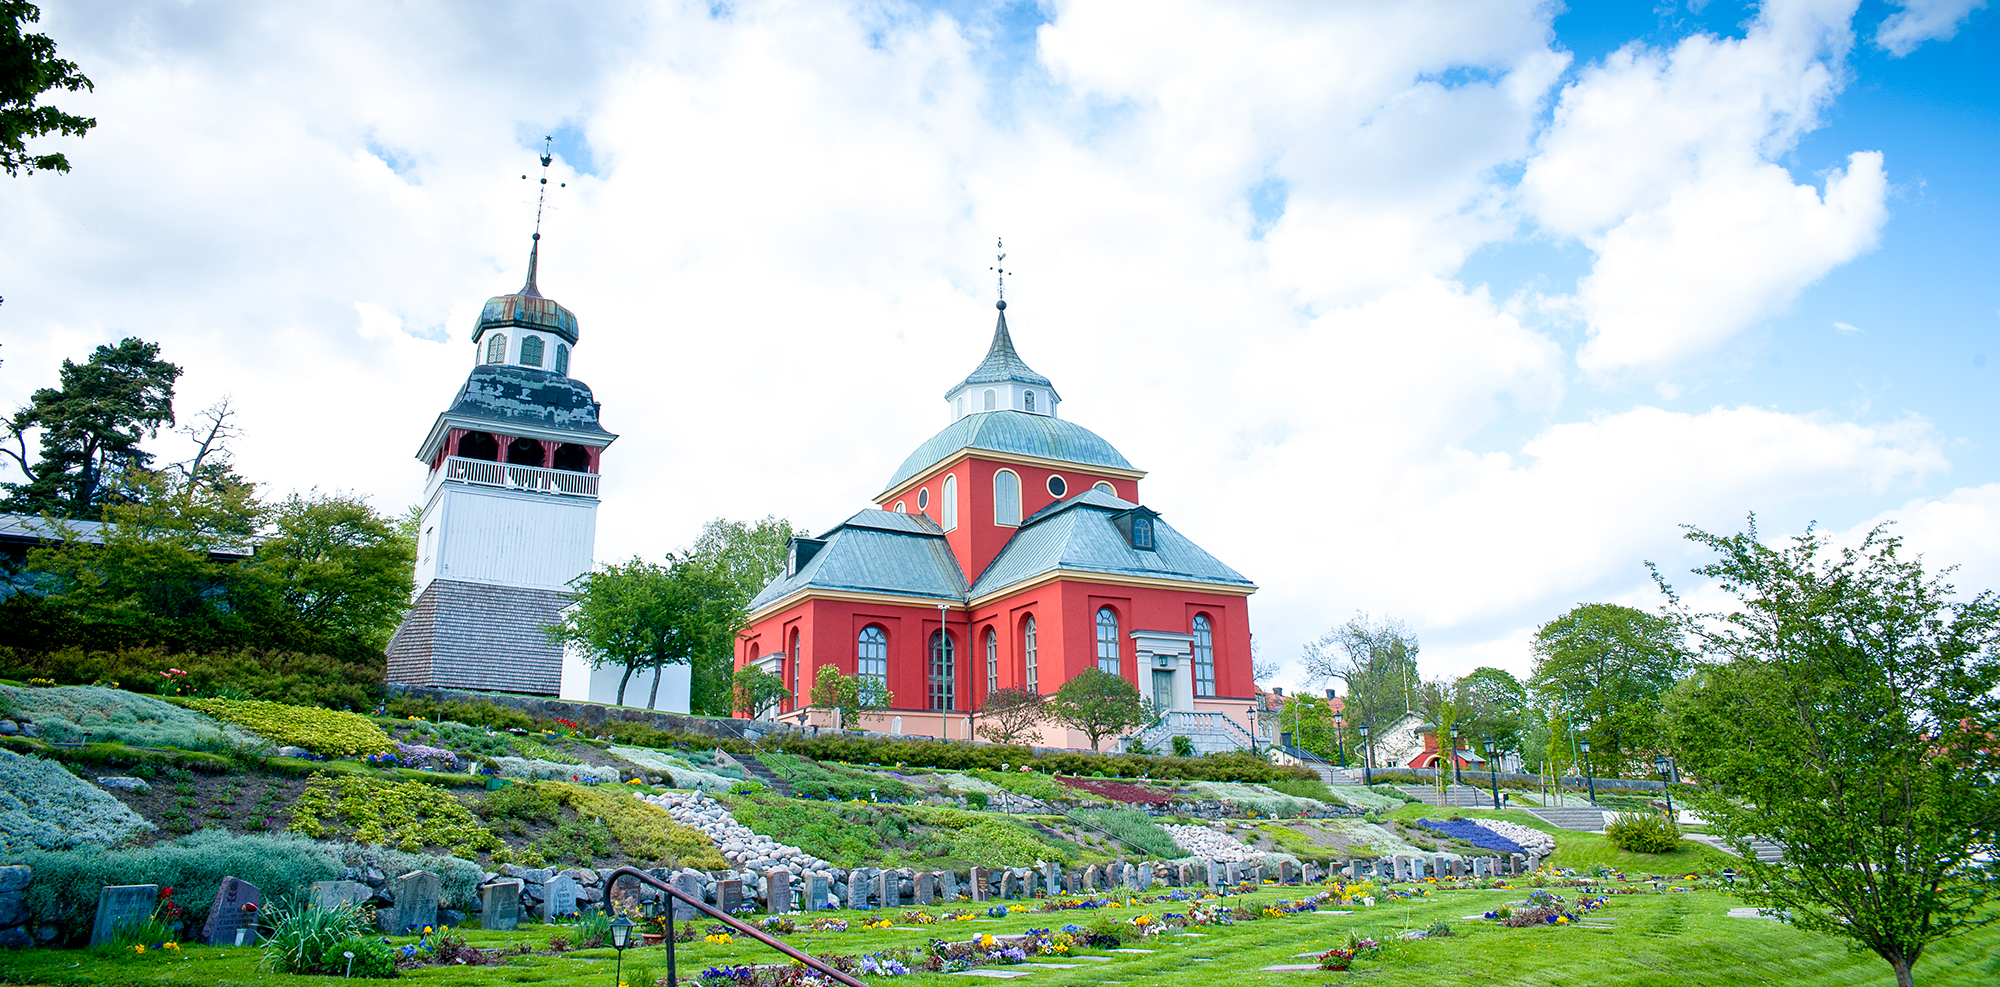 Den vackra röda kyrkan Ulrika Eleonora